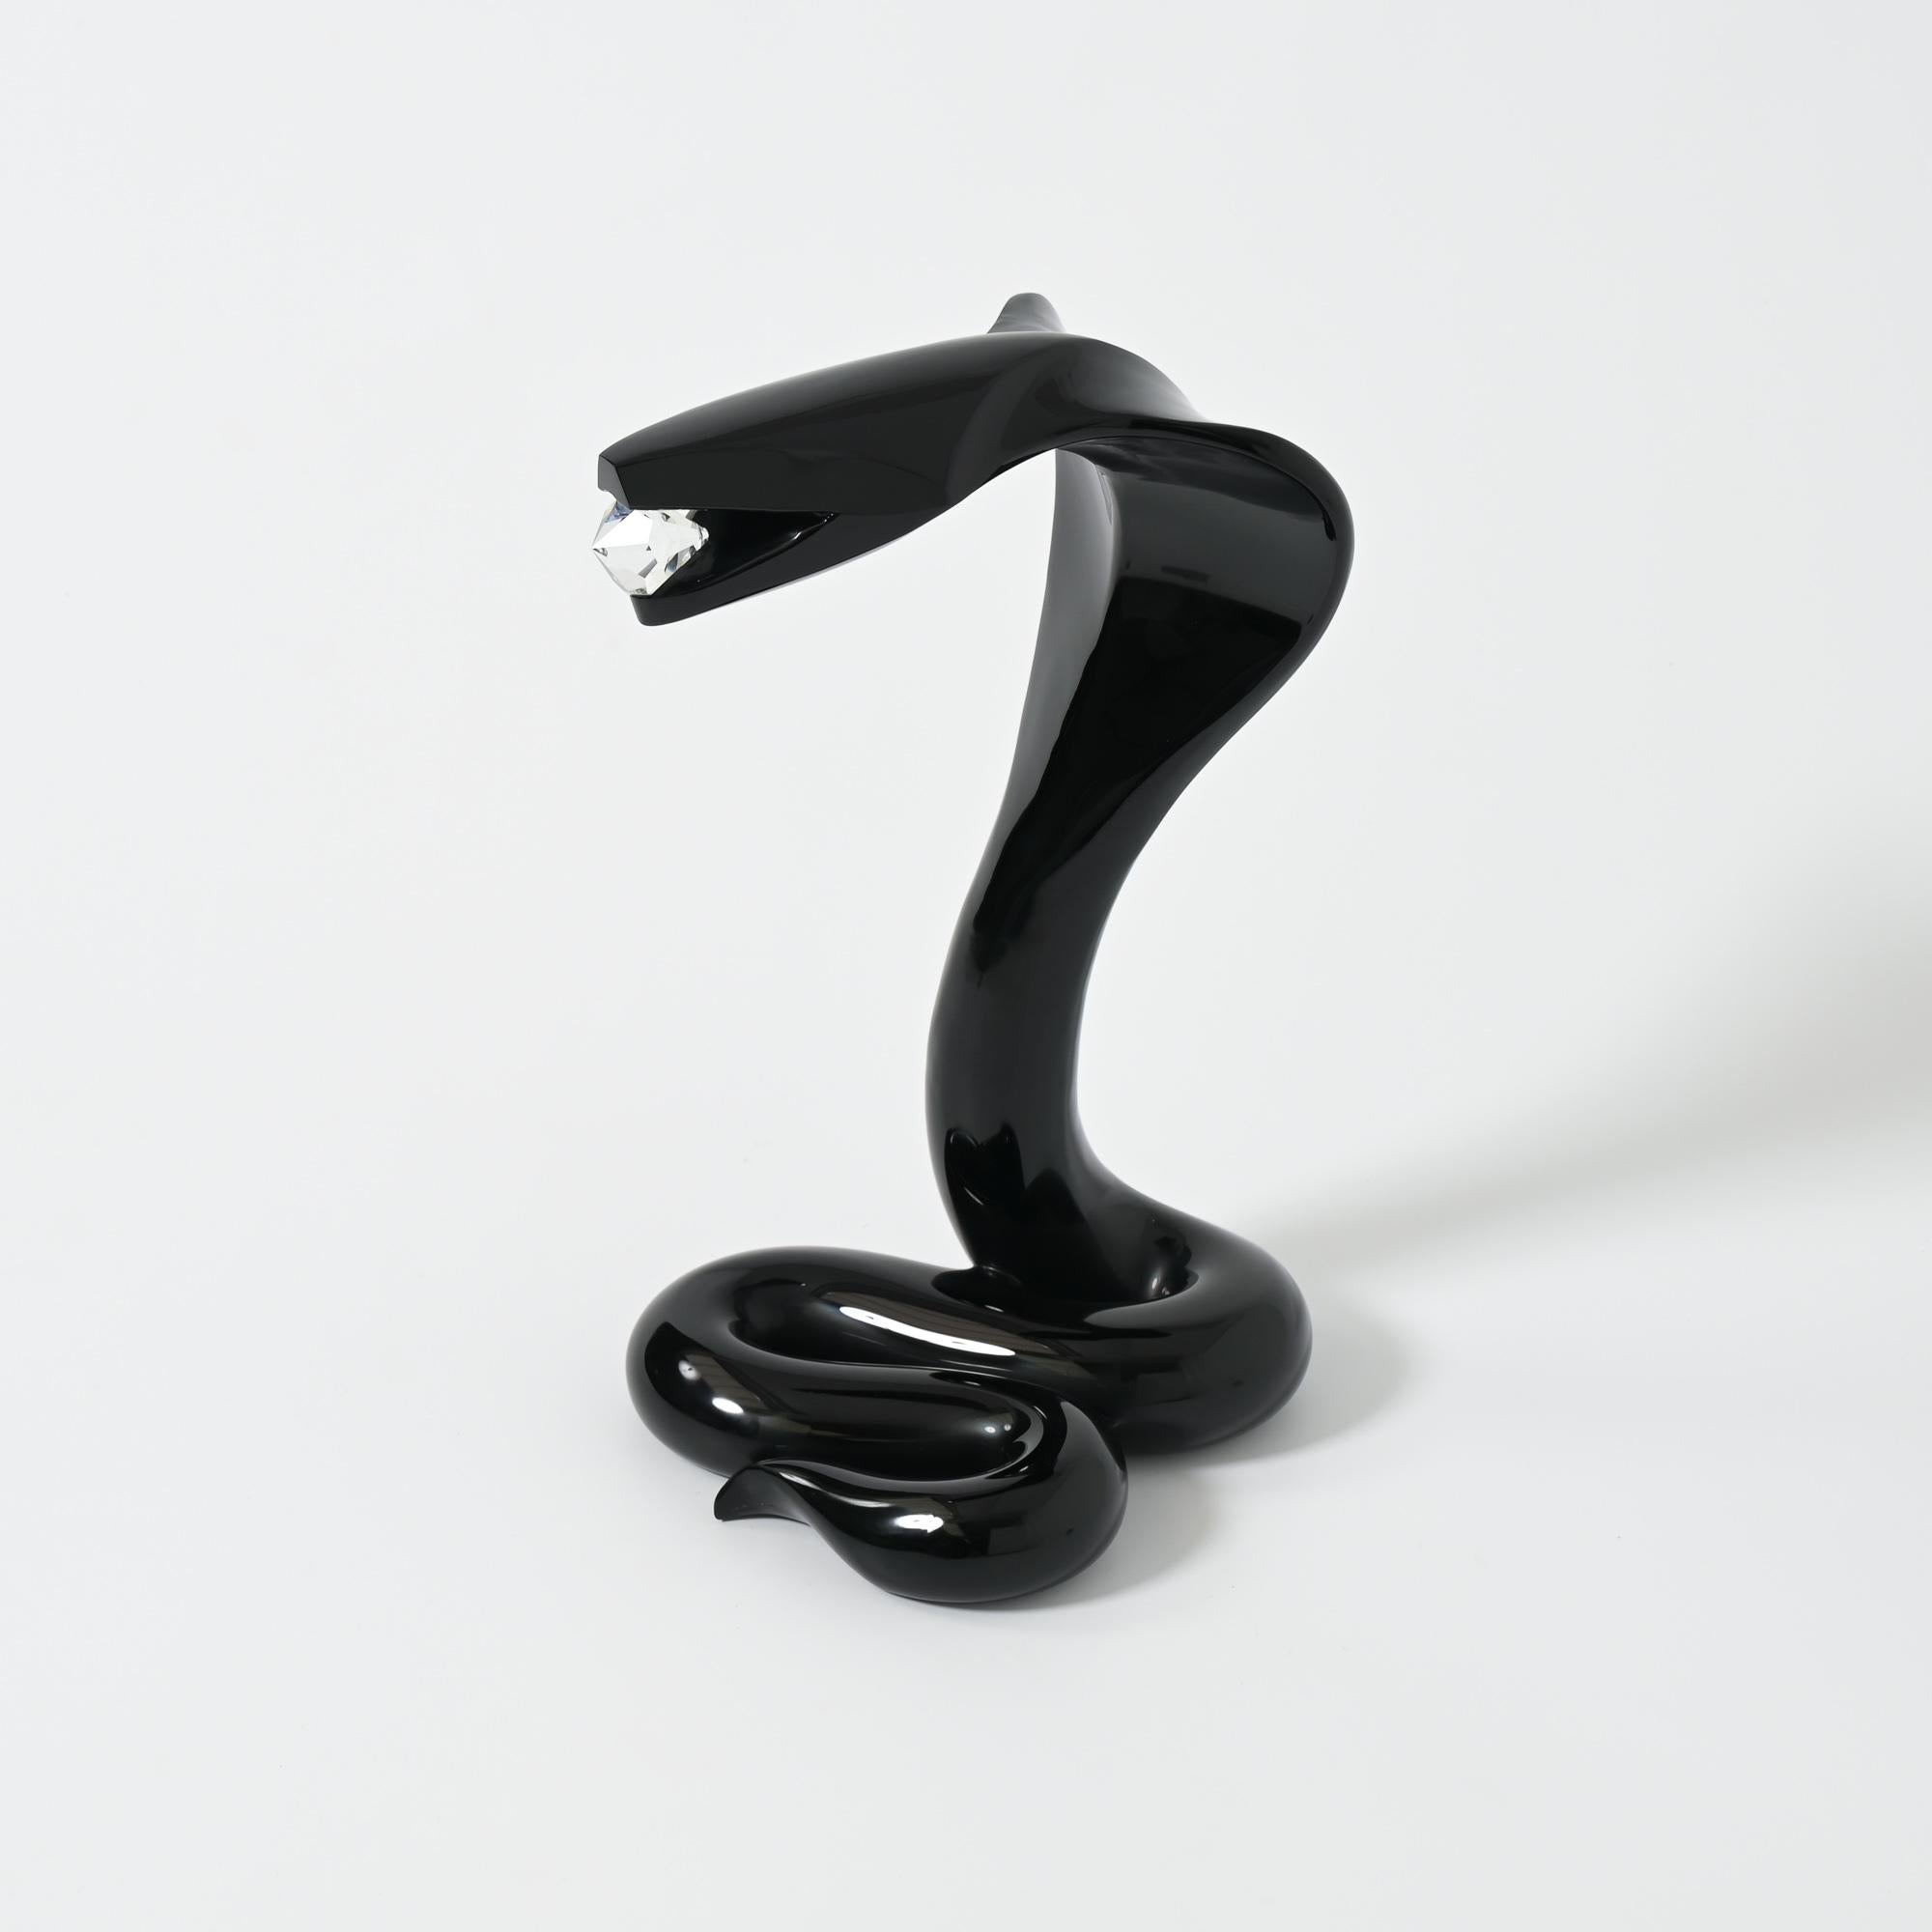 Cette sculpture de Cobra a été créée et réalisée par le célèbre artiste verrier italien Loredano Rosin dans son atelier de Murano, à Venise, en Italie, dans les années 1980.
Le cobra noir en verre de Murano tient un diamant en verre de Murano